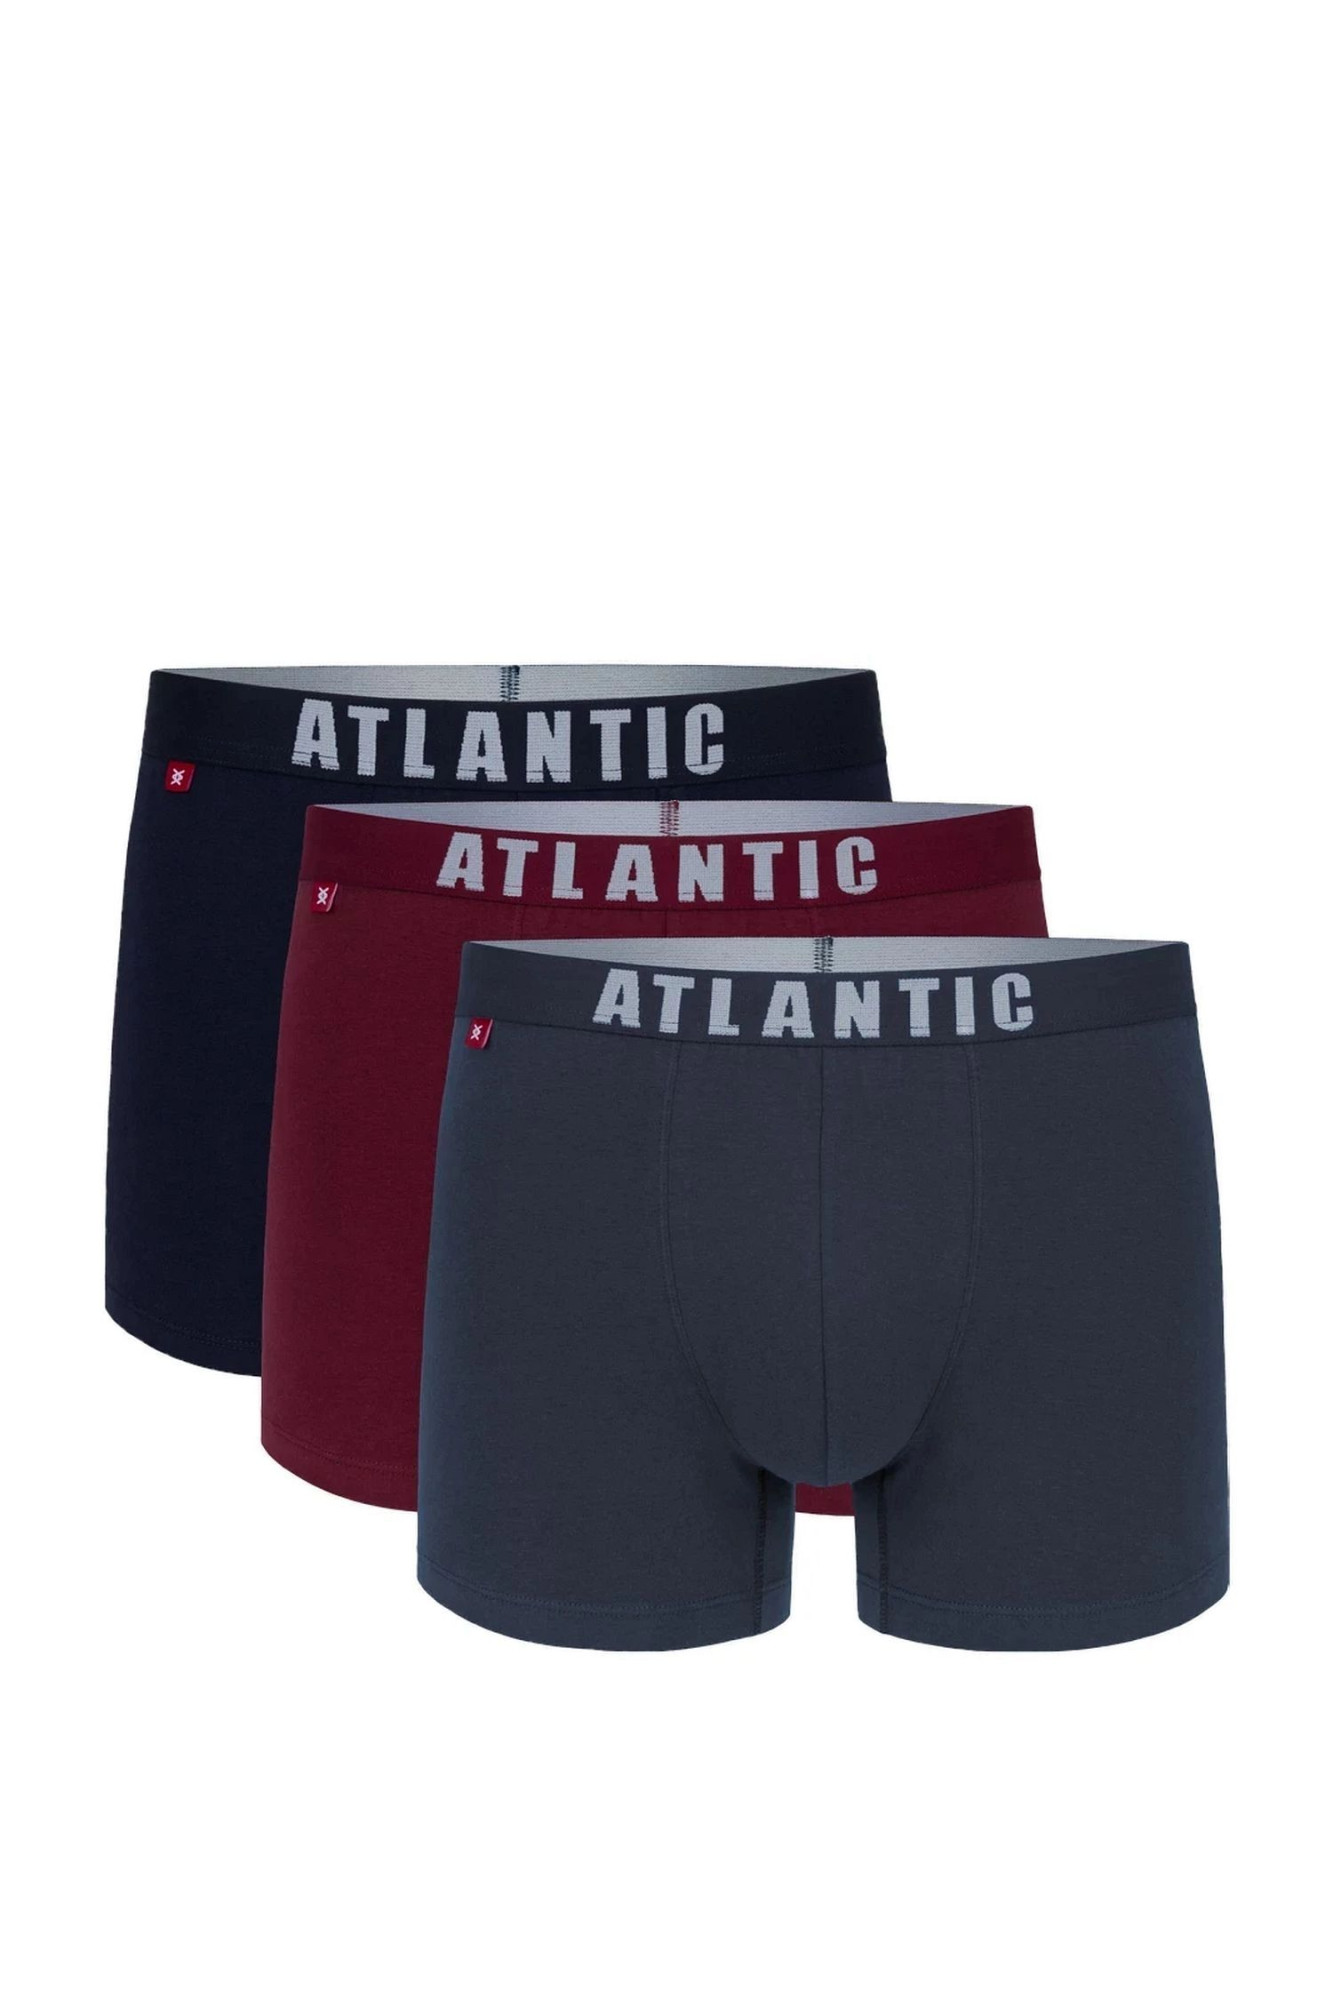 Pánské boxerky 3 pack 011/01 - Atlantic vícebarevná XXL